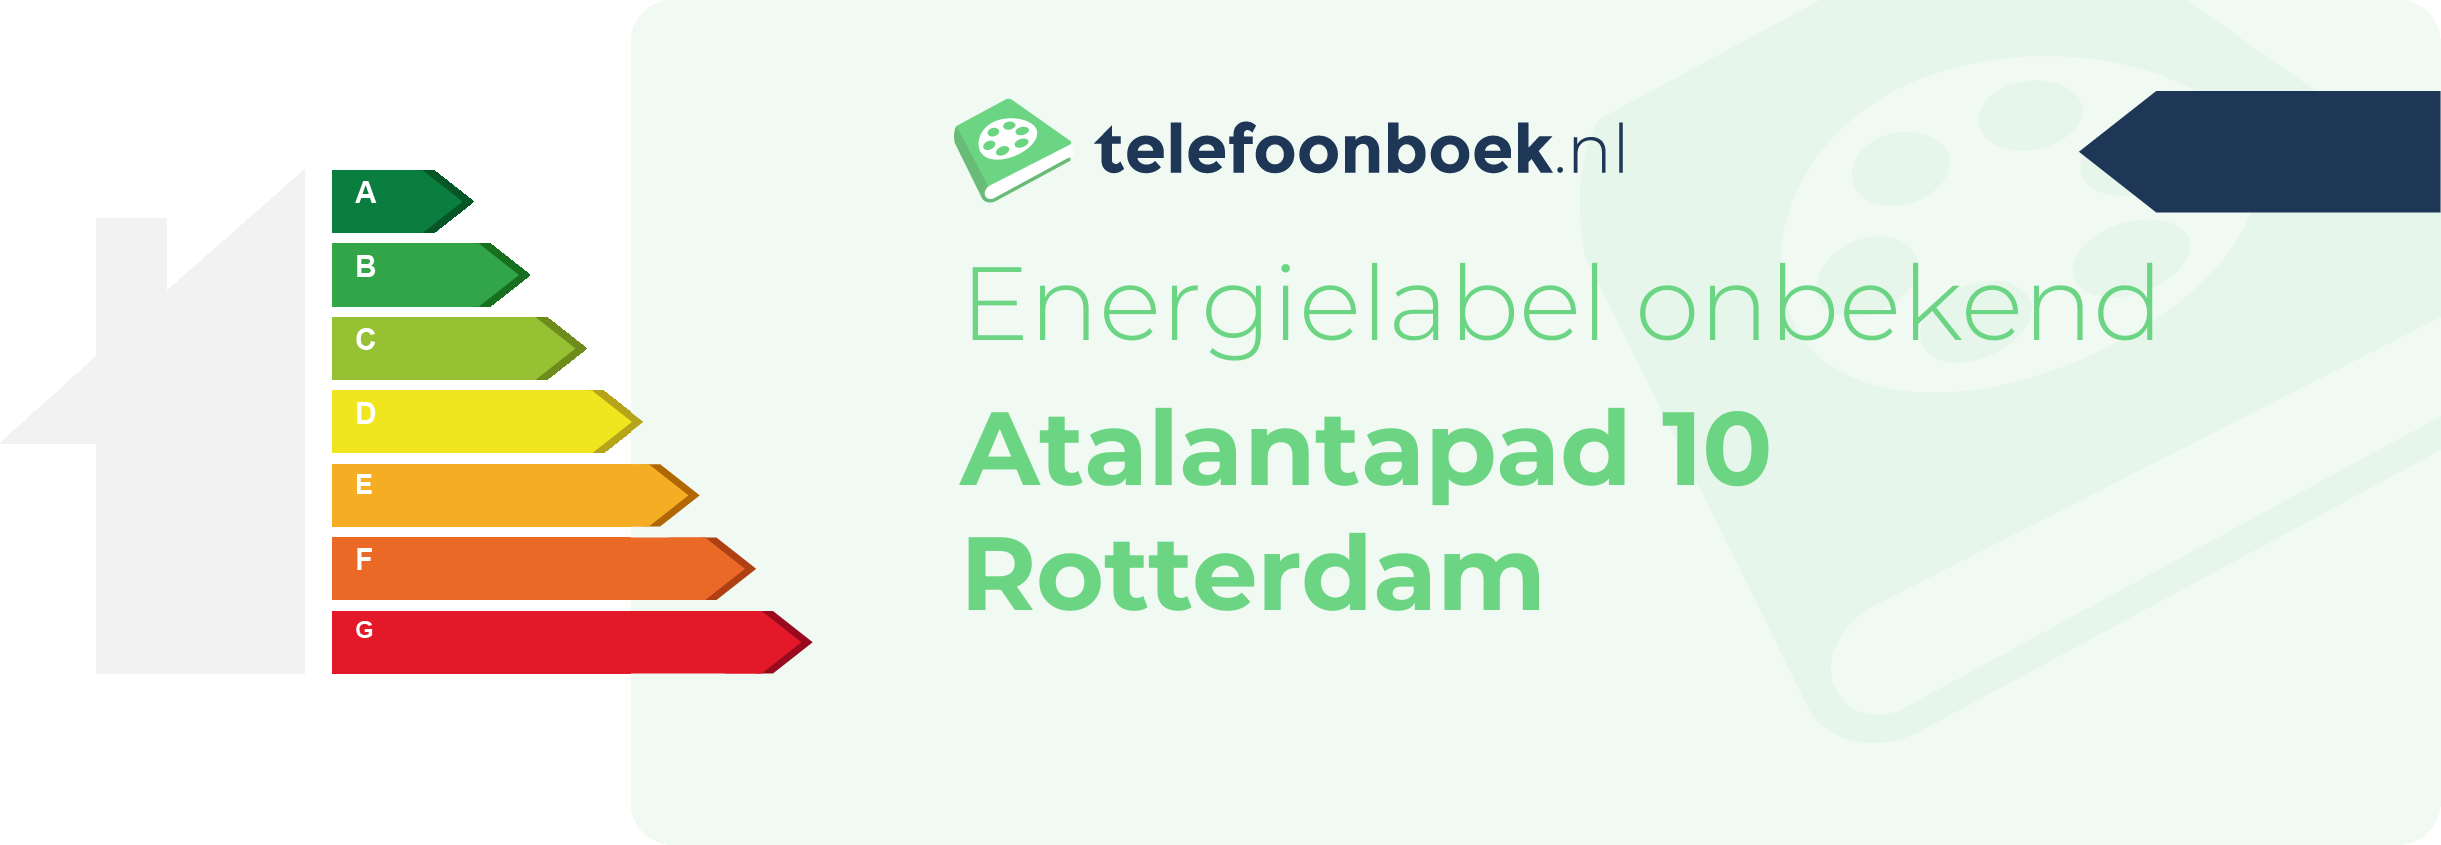 Energielabel Atalantapad 10 Rotterdam